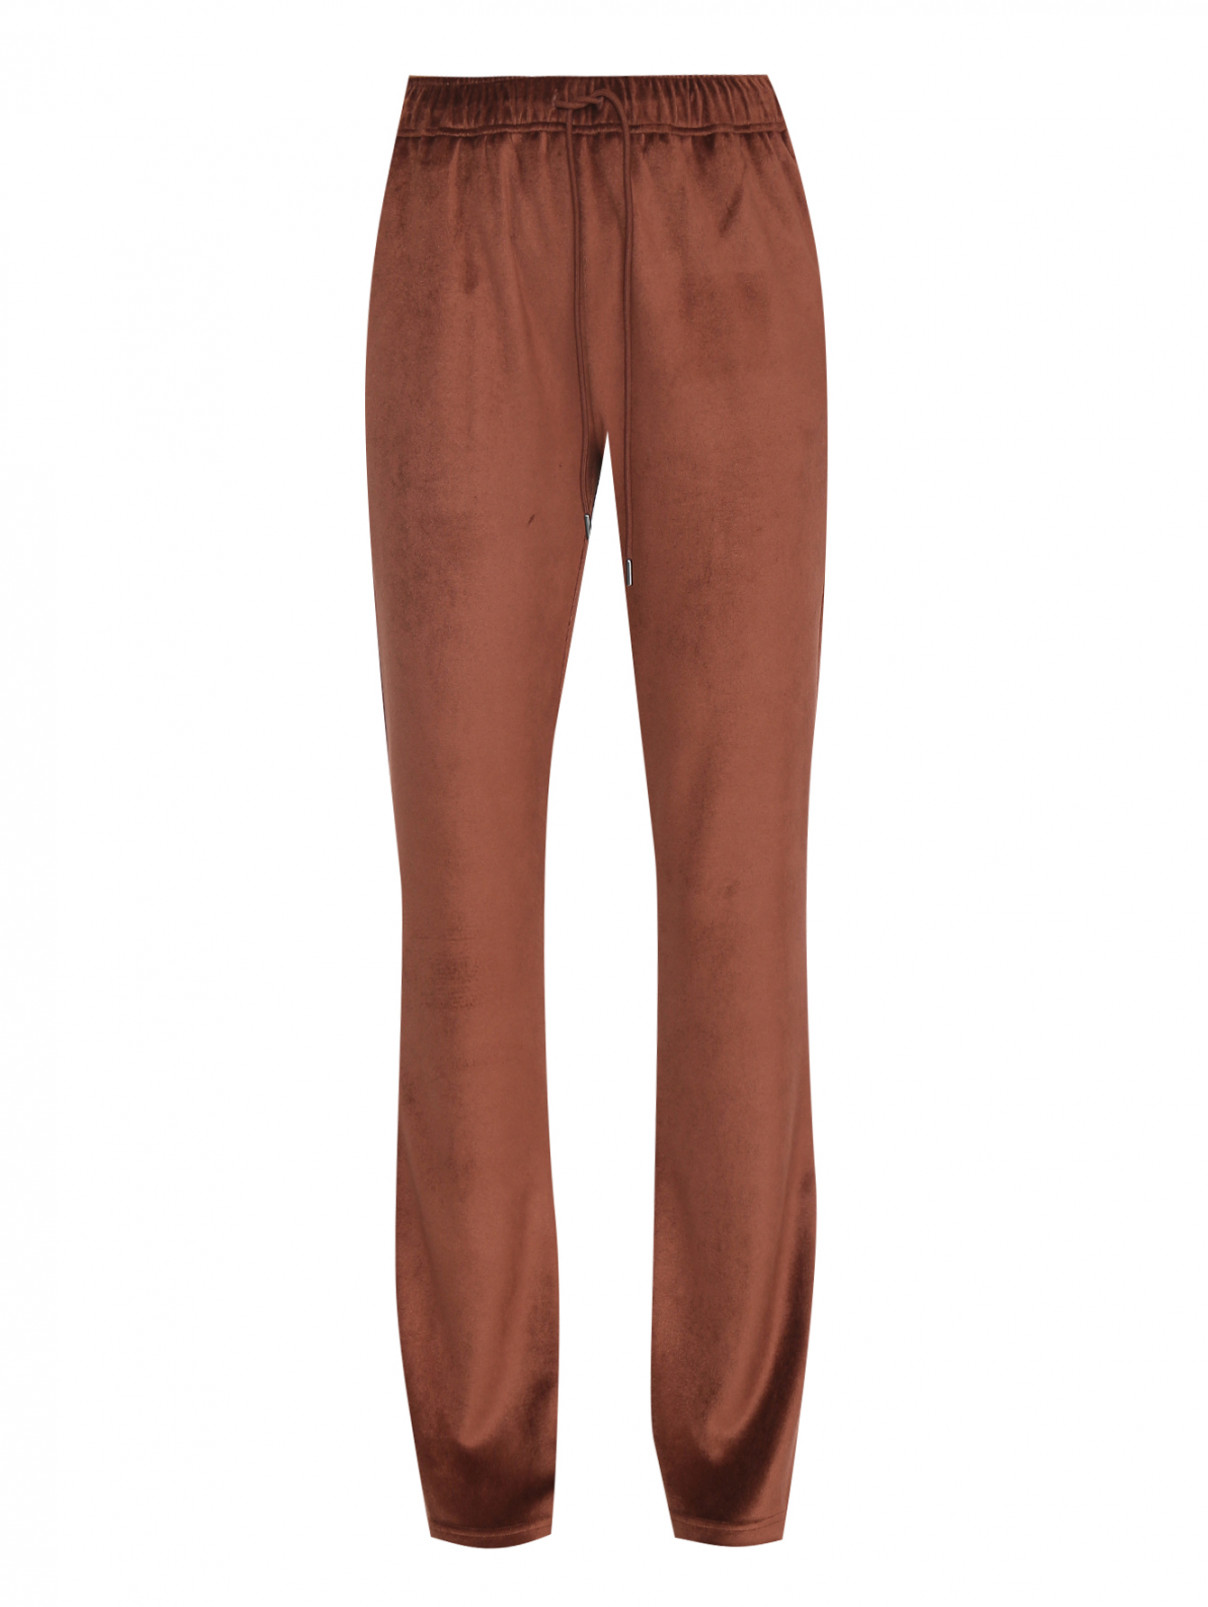 Трикотажные брюки из вискозы на резинке Moncler  –  Общий вид  – Цвет:  Коричневый